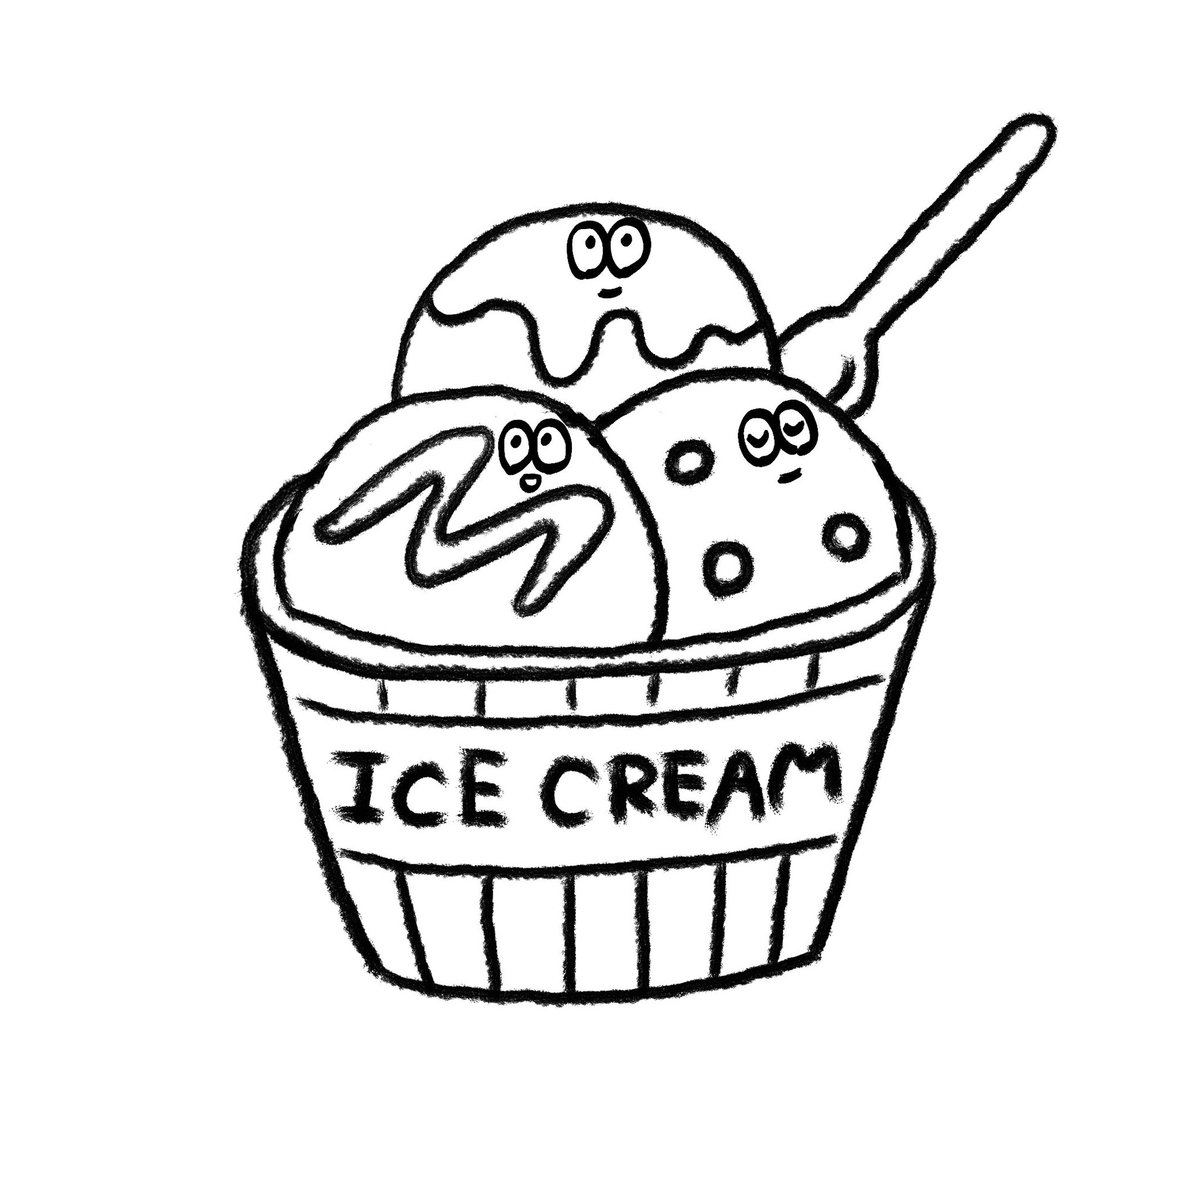 Twitter 上的 Hole カップアイスクリーム 線画も イラスト好きさんと繋がりたい イラスト好きな人と繋がりたい 絵描きさんと繋がりたい 食べ物イラスト Illustration T Co Zm2chvfpcq Twitter